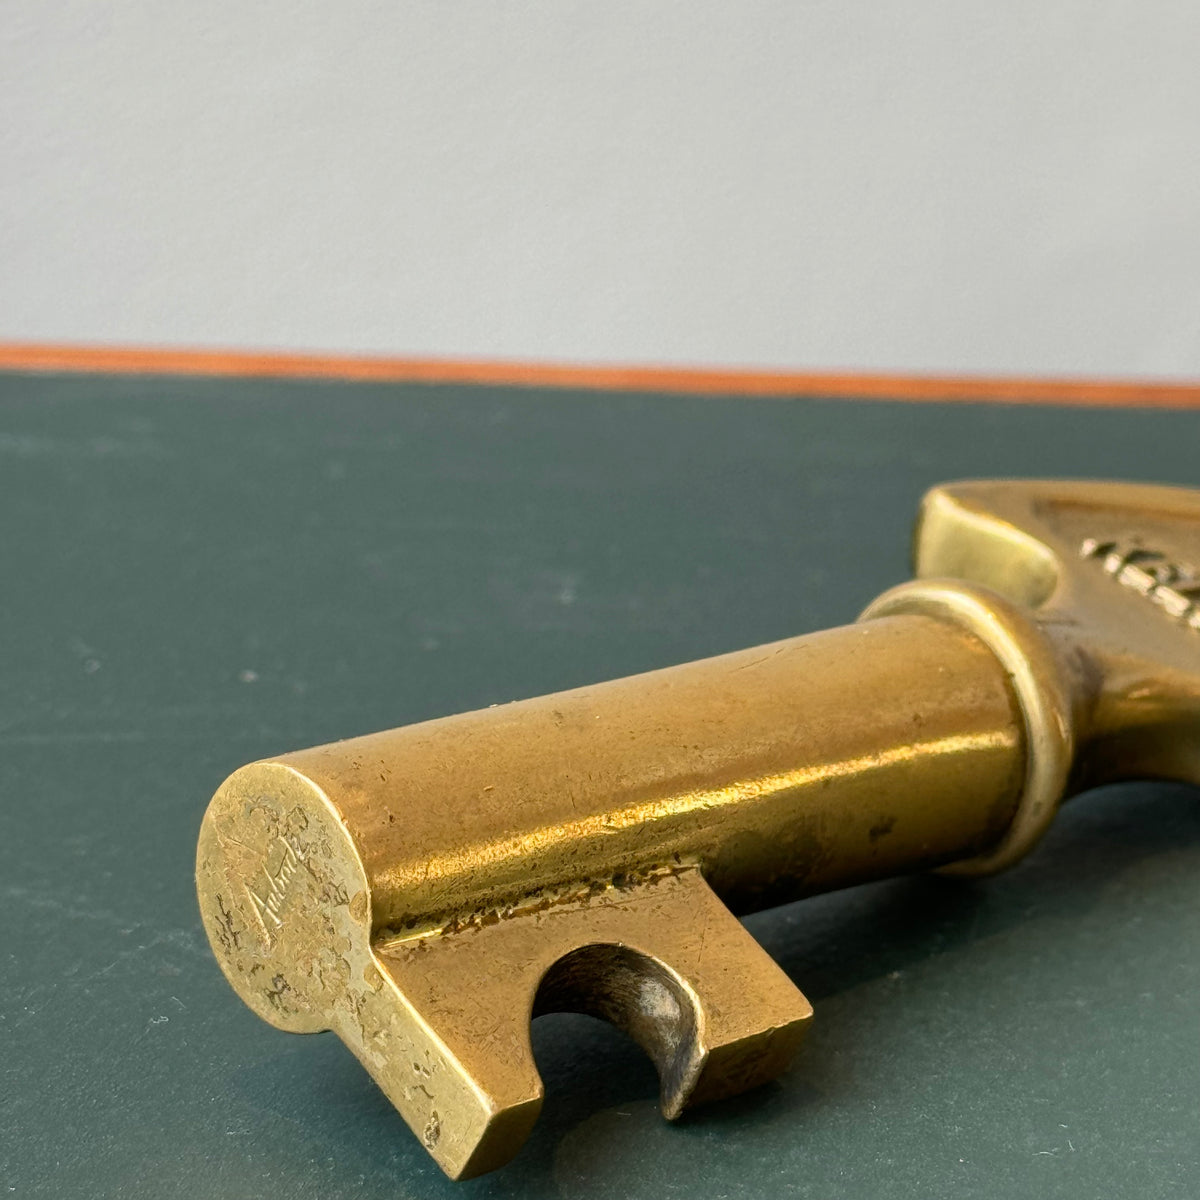 Brass Key Corkscrew / with Elephant / Carl Auböck II